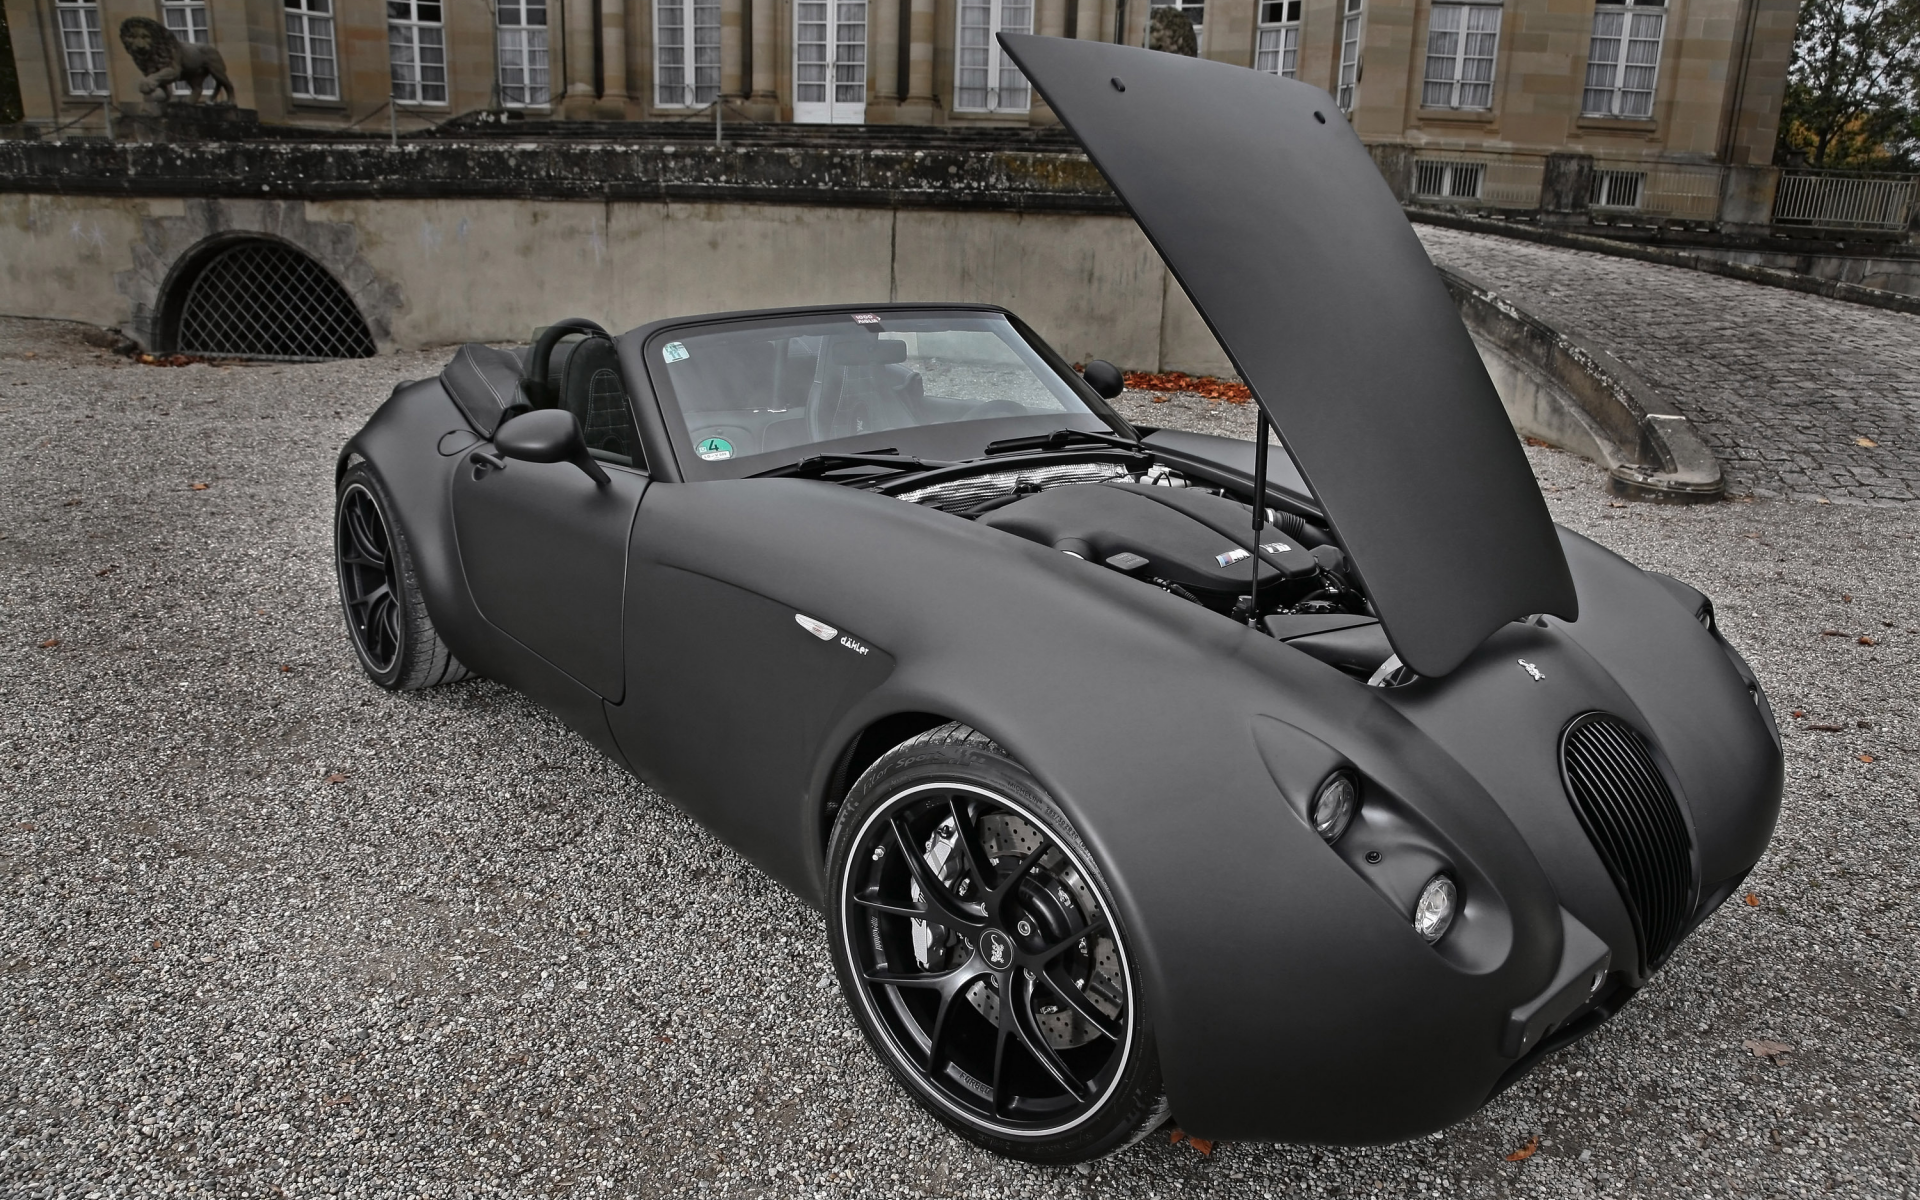 машина, car, engine, 3000x2000, мотор, двигатель, wiesmann black bat